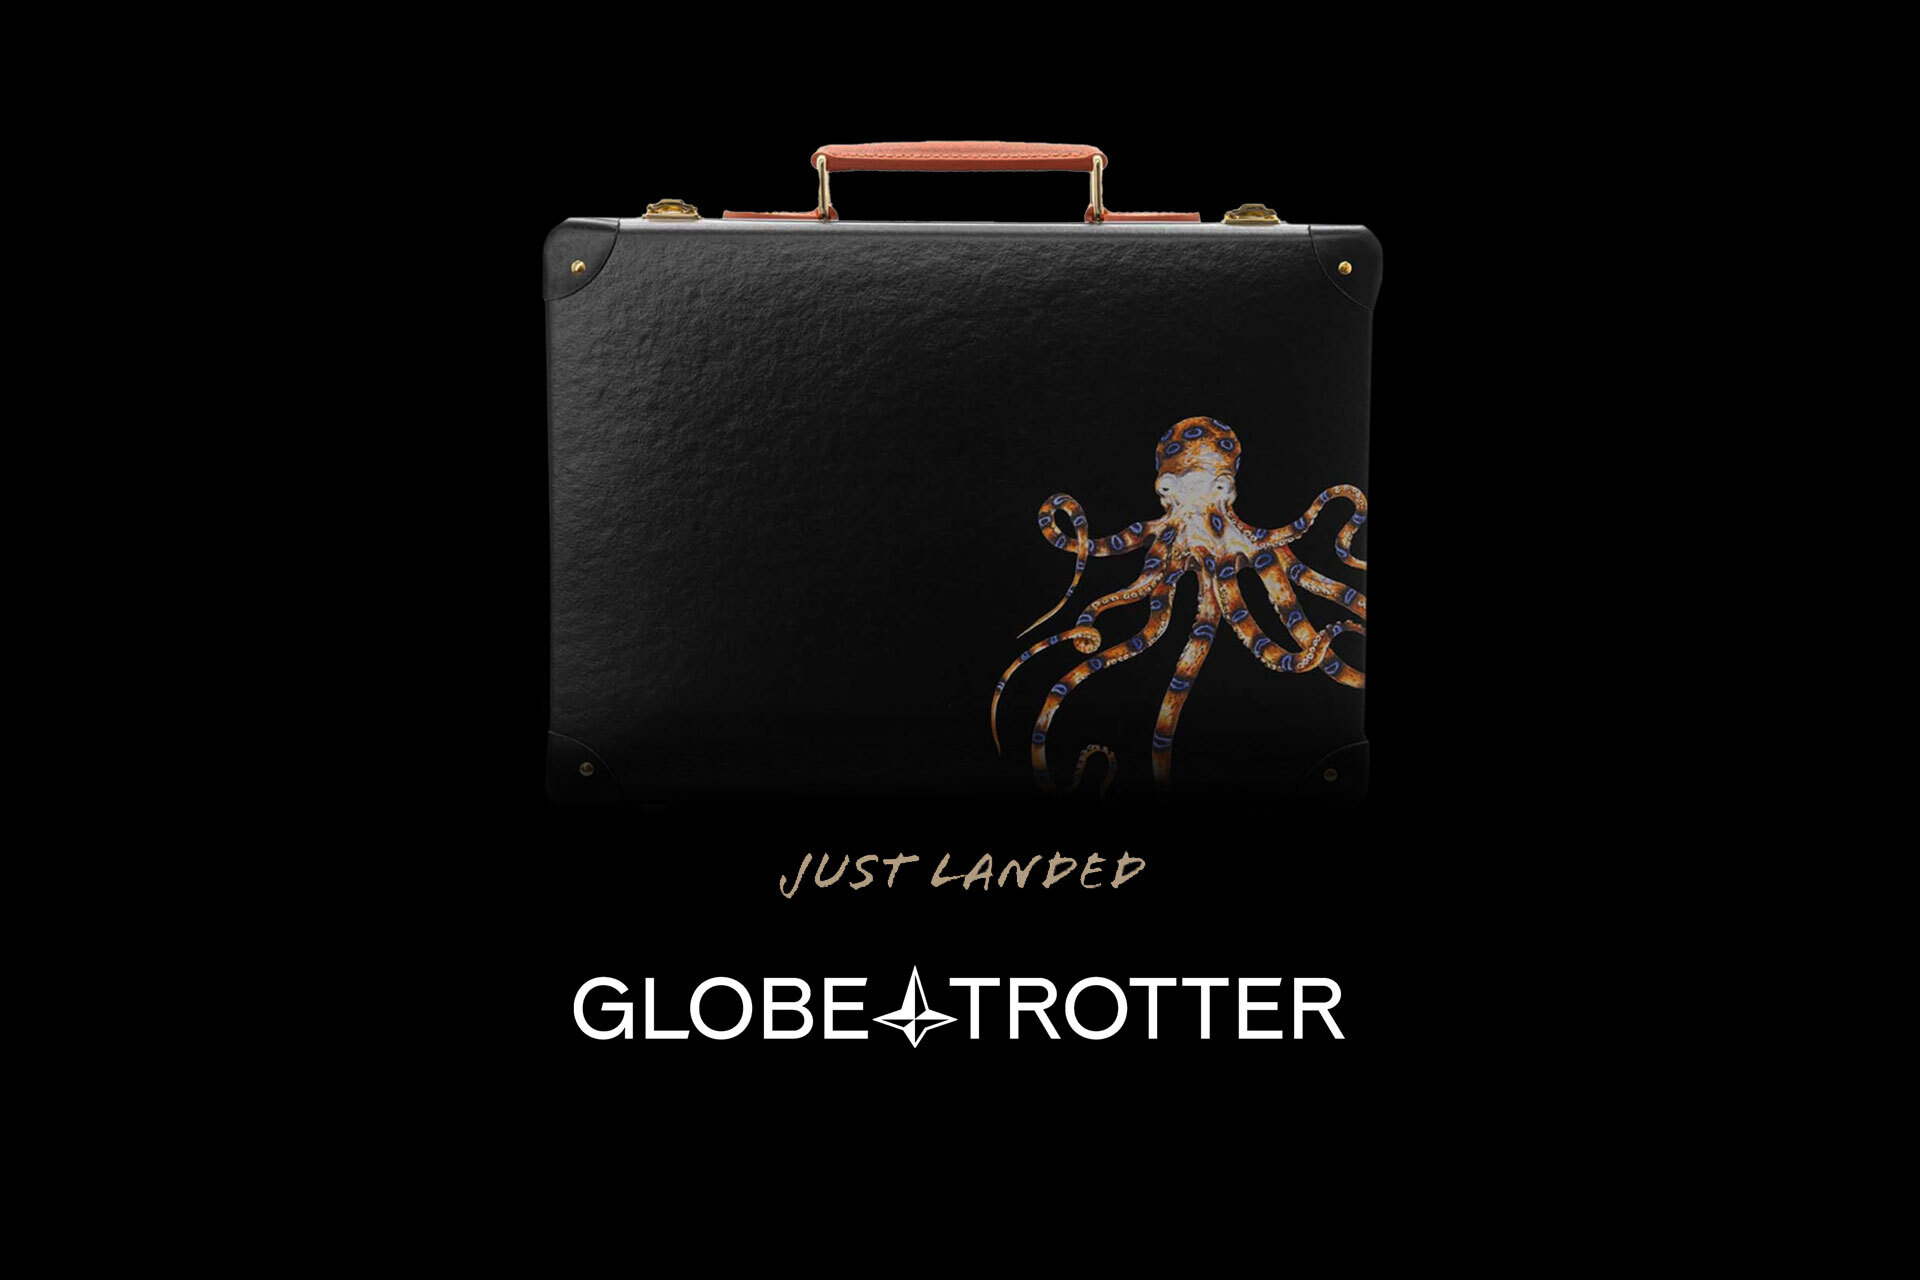 Just Landed / Globe-Trotter | Uncrate, #Landed #GlobeTrotter #Uncrate